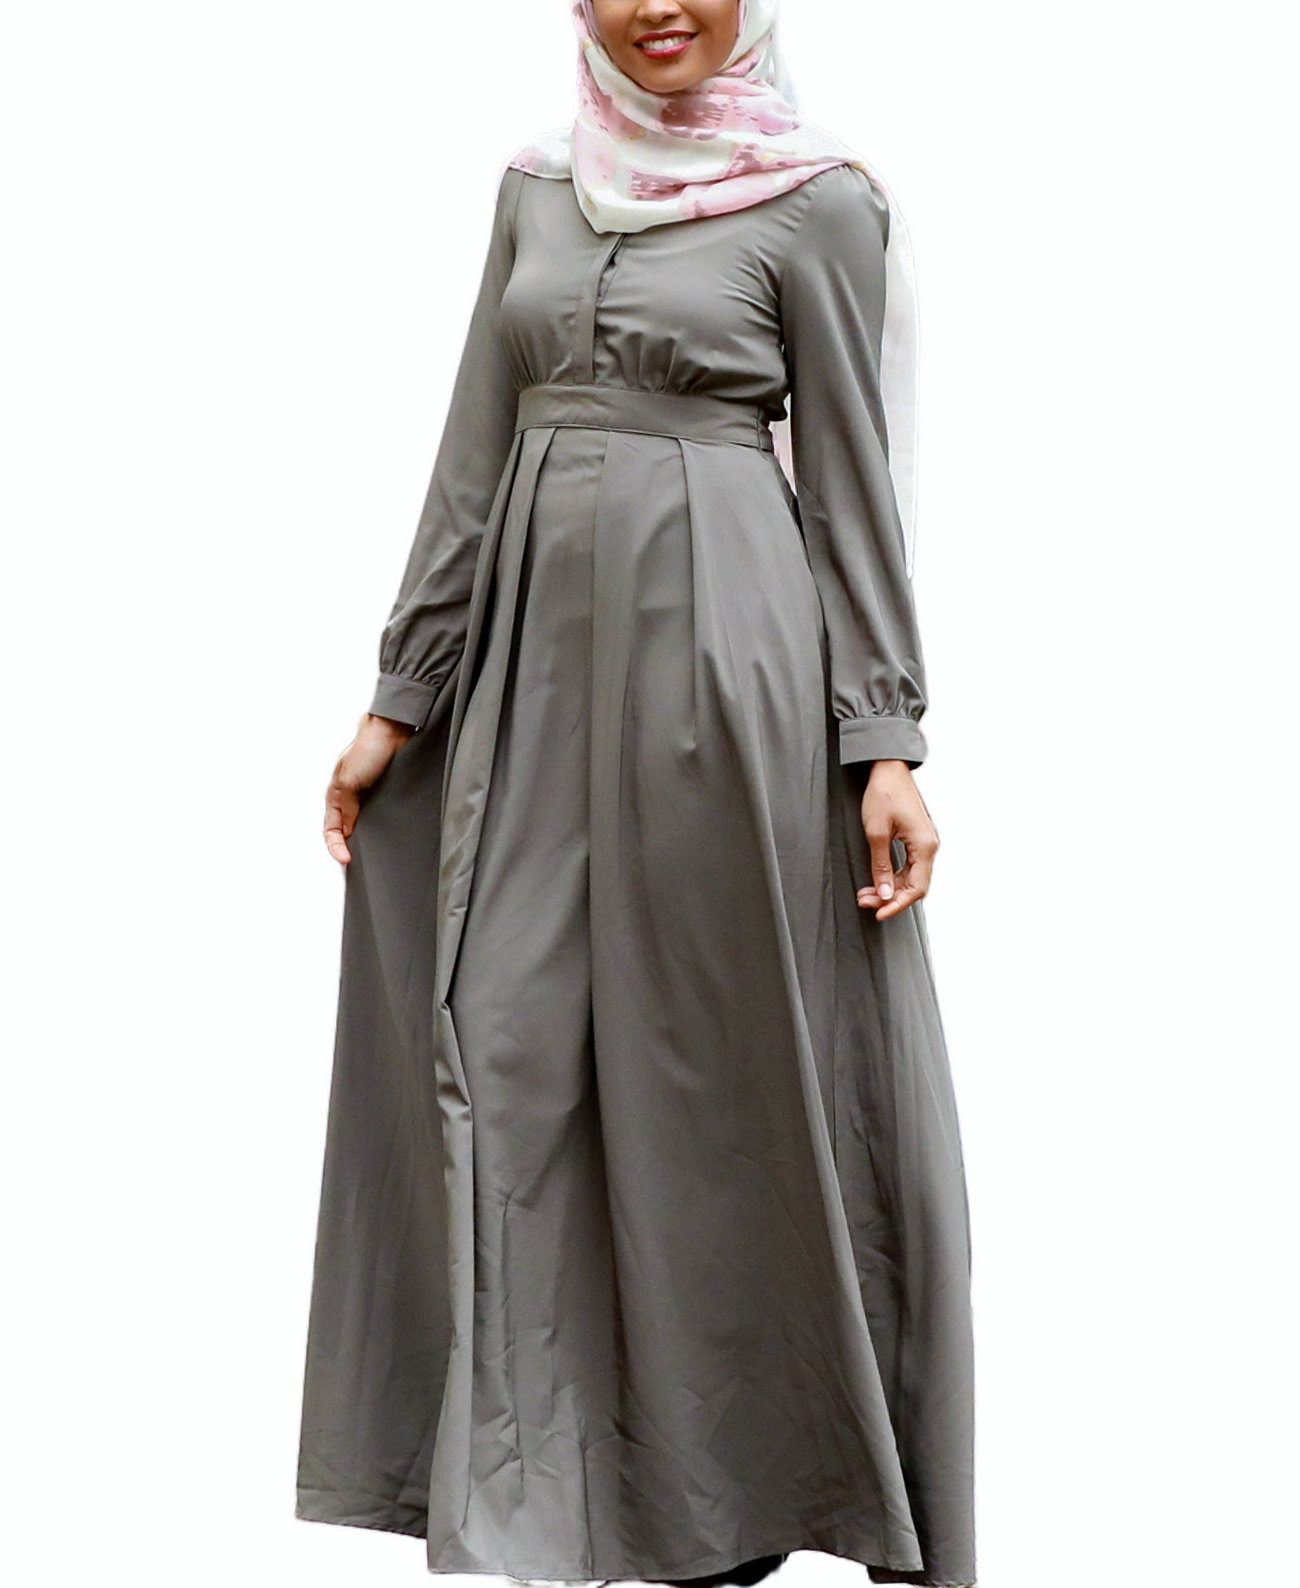 Женское платье макси с решеткой Urban Modesty